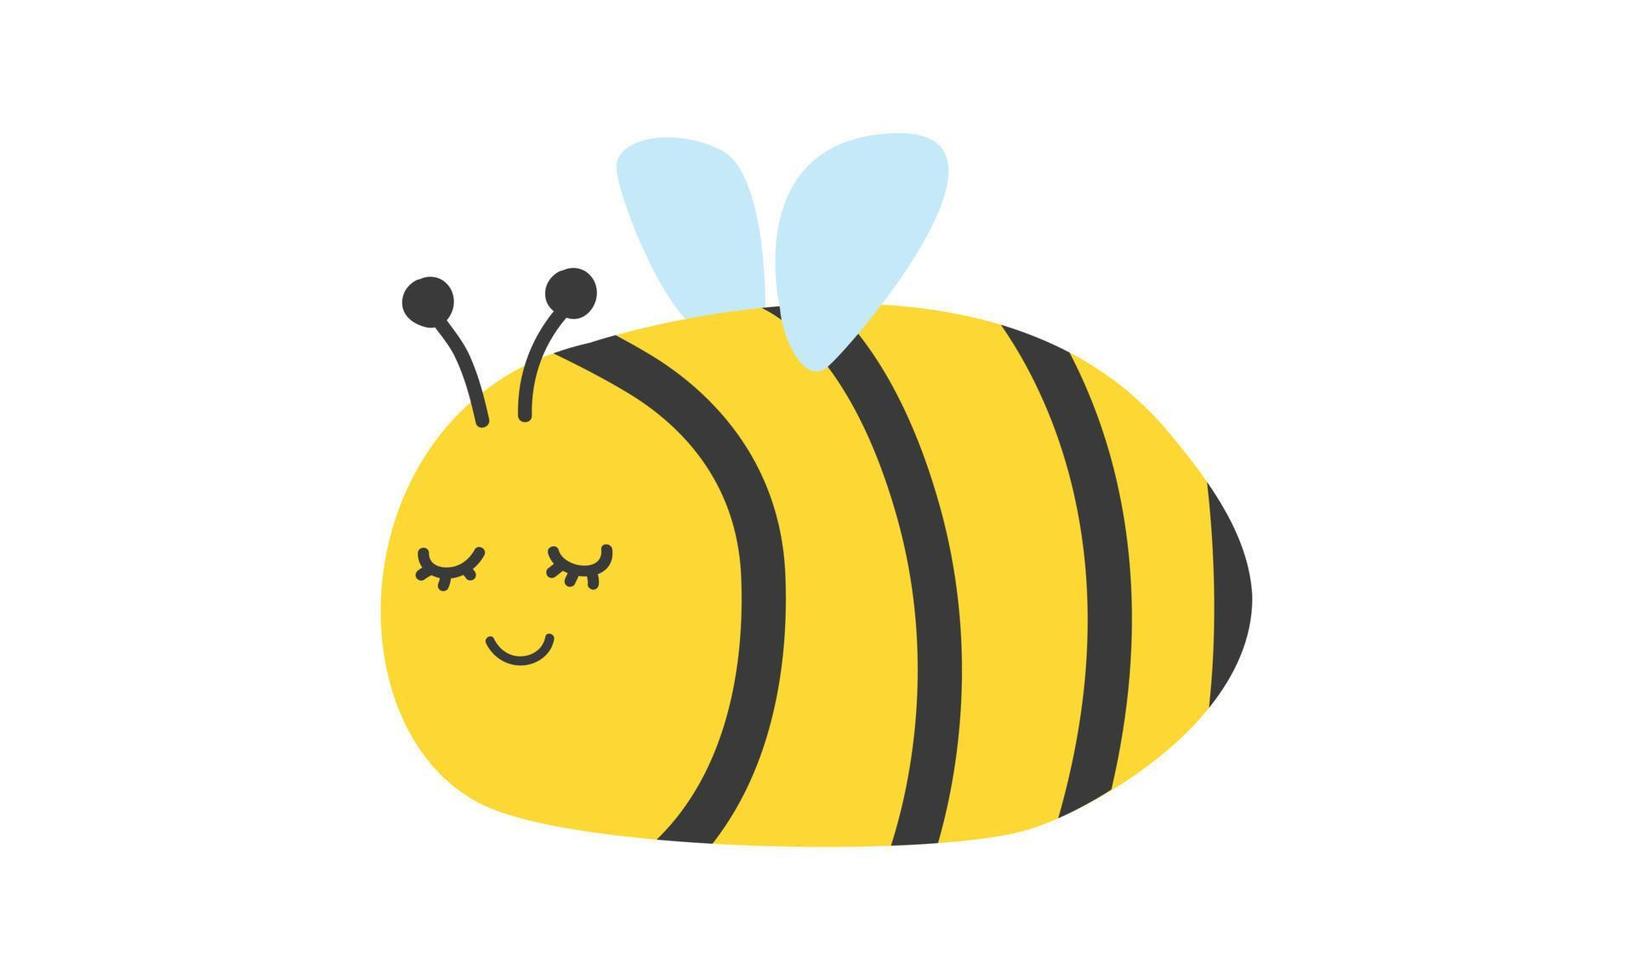 clipart d'abeille volante de dessin animé. illustration de conception de vecteur plat de personnage d'abeille mignon simple isolé sur blanc. dessin de dessin animé de mascotte d'abeille mignonne et amicale. joli personnage d'insecte style doodle dessiné à la main